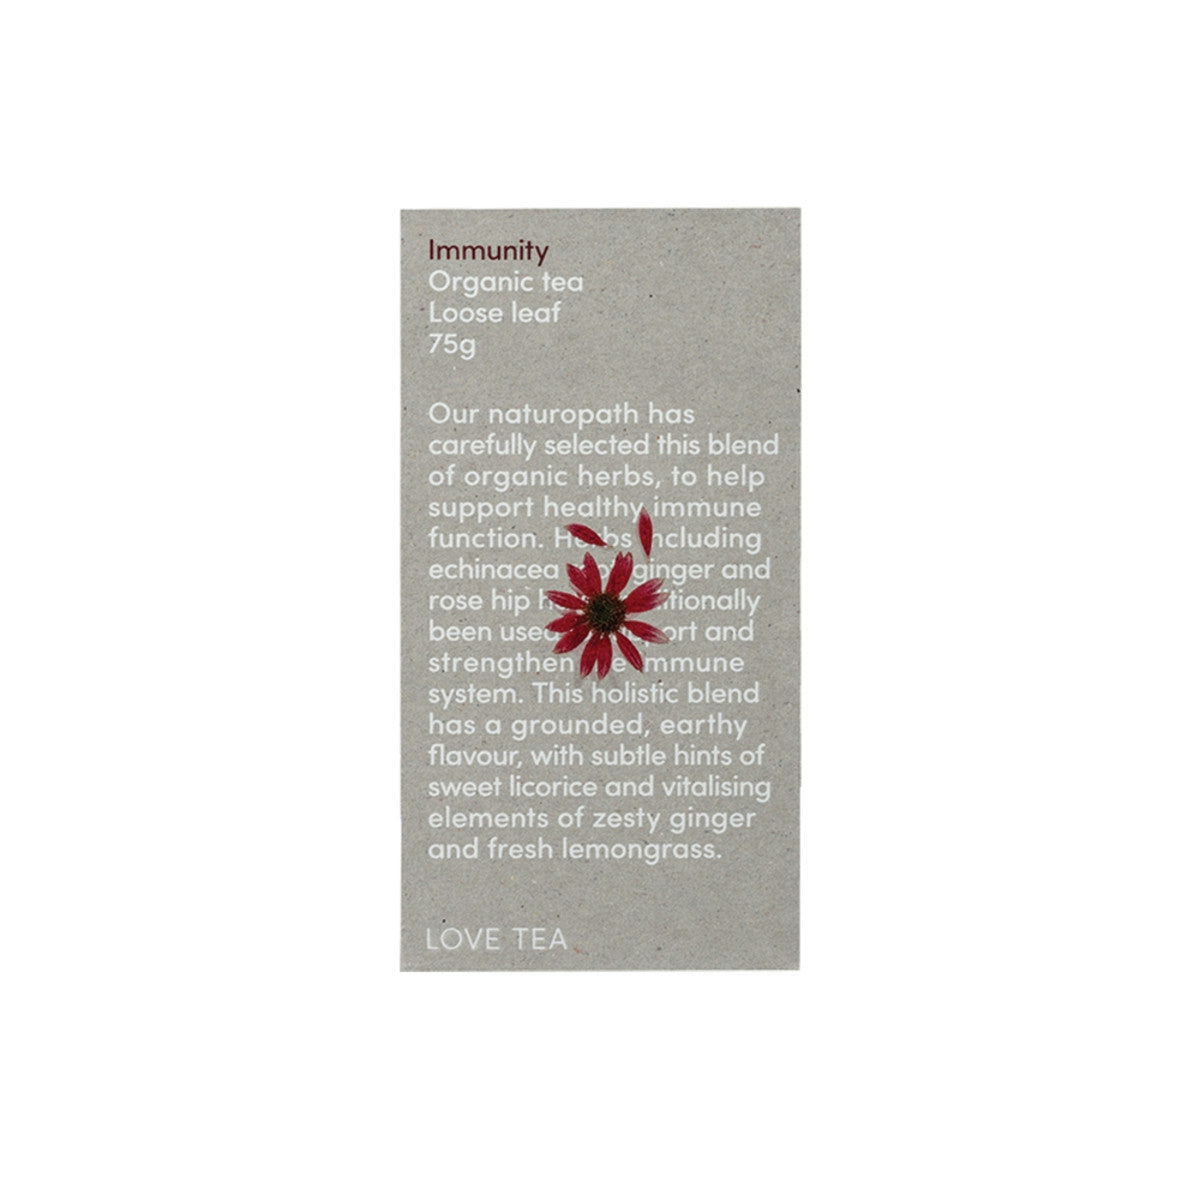 image of Love Tea Organic Immunity Tea Loose Leaf 75g on white background 